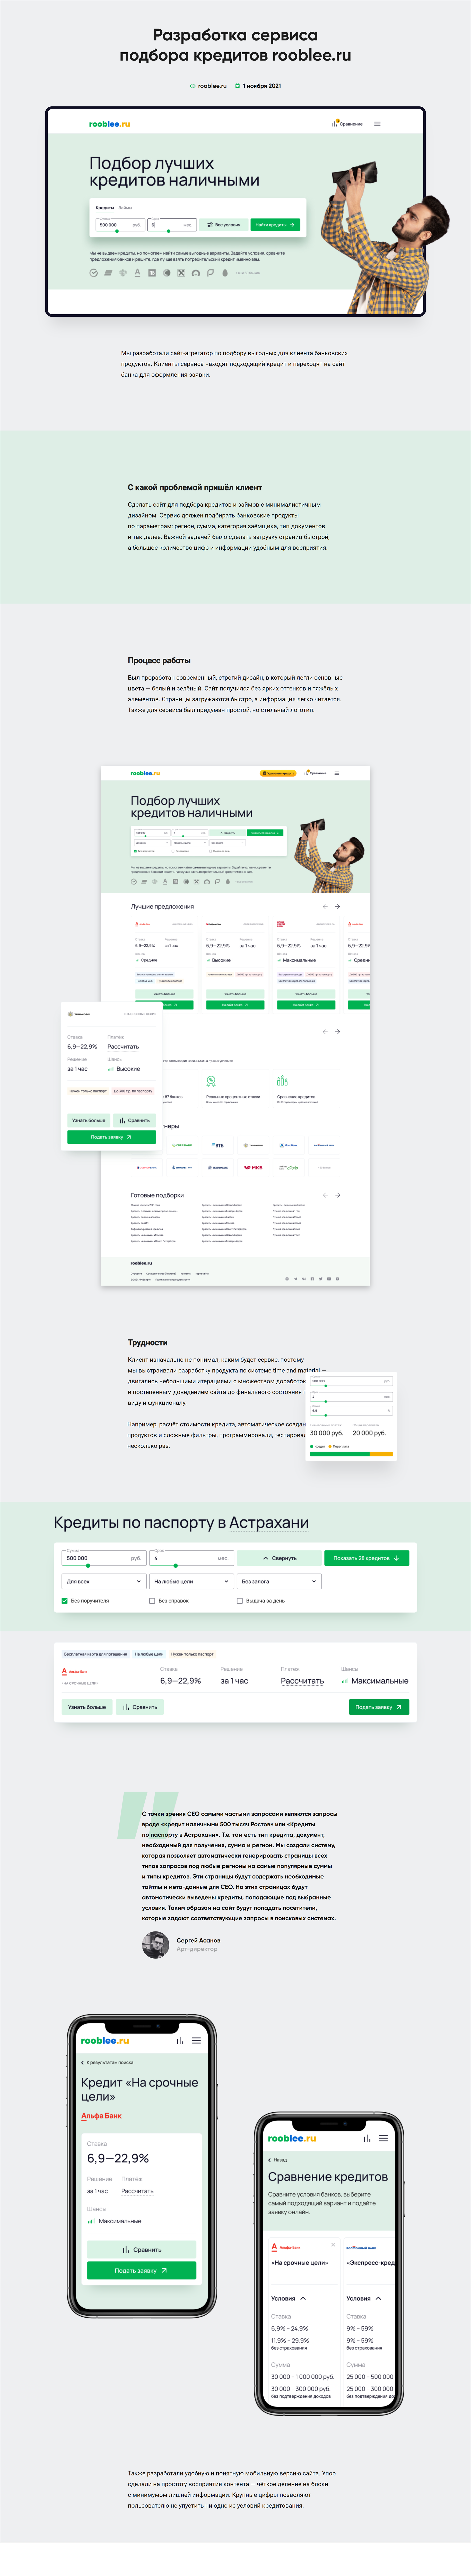 Разработка сервиса подбора кредита rooblee.ru